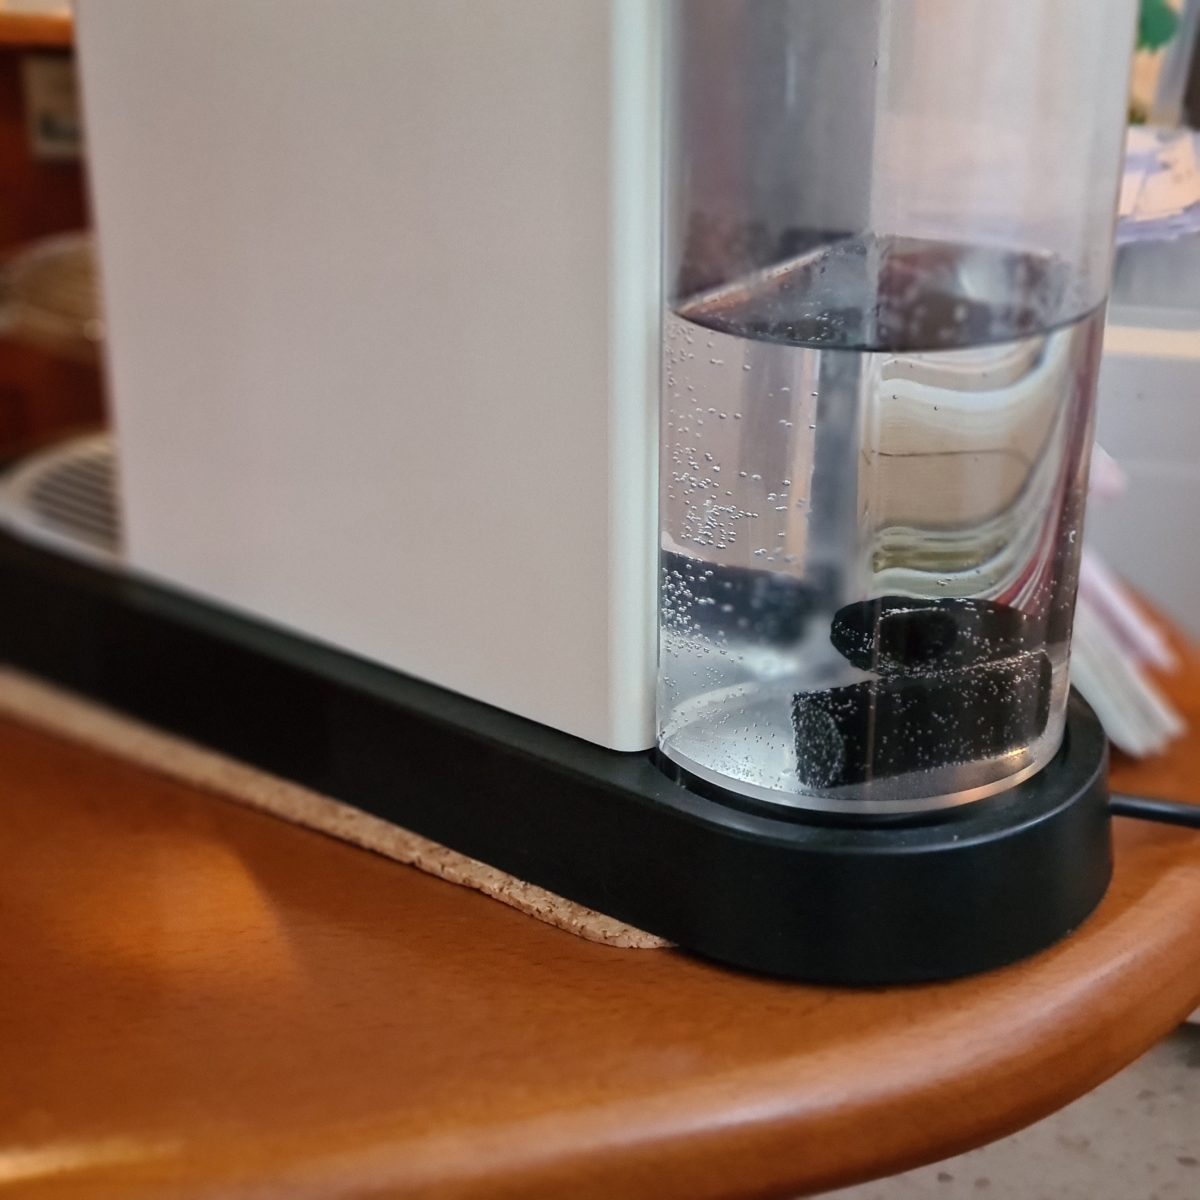 Pokud například máte kávovár s nádržkou na vodu, zkuste tam hodit jeden Binchio uhlík. Vodu vám bude filtrovat přímo tam.